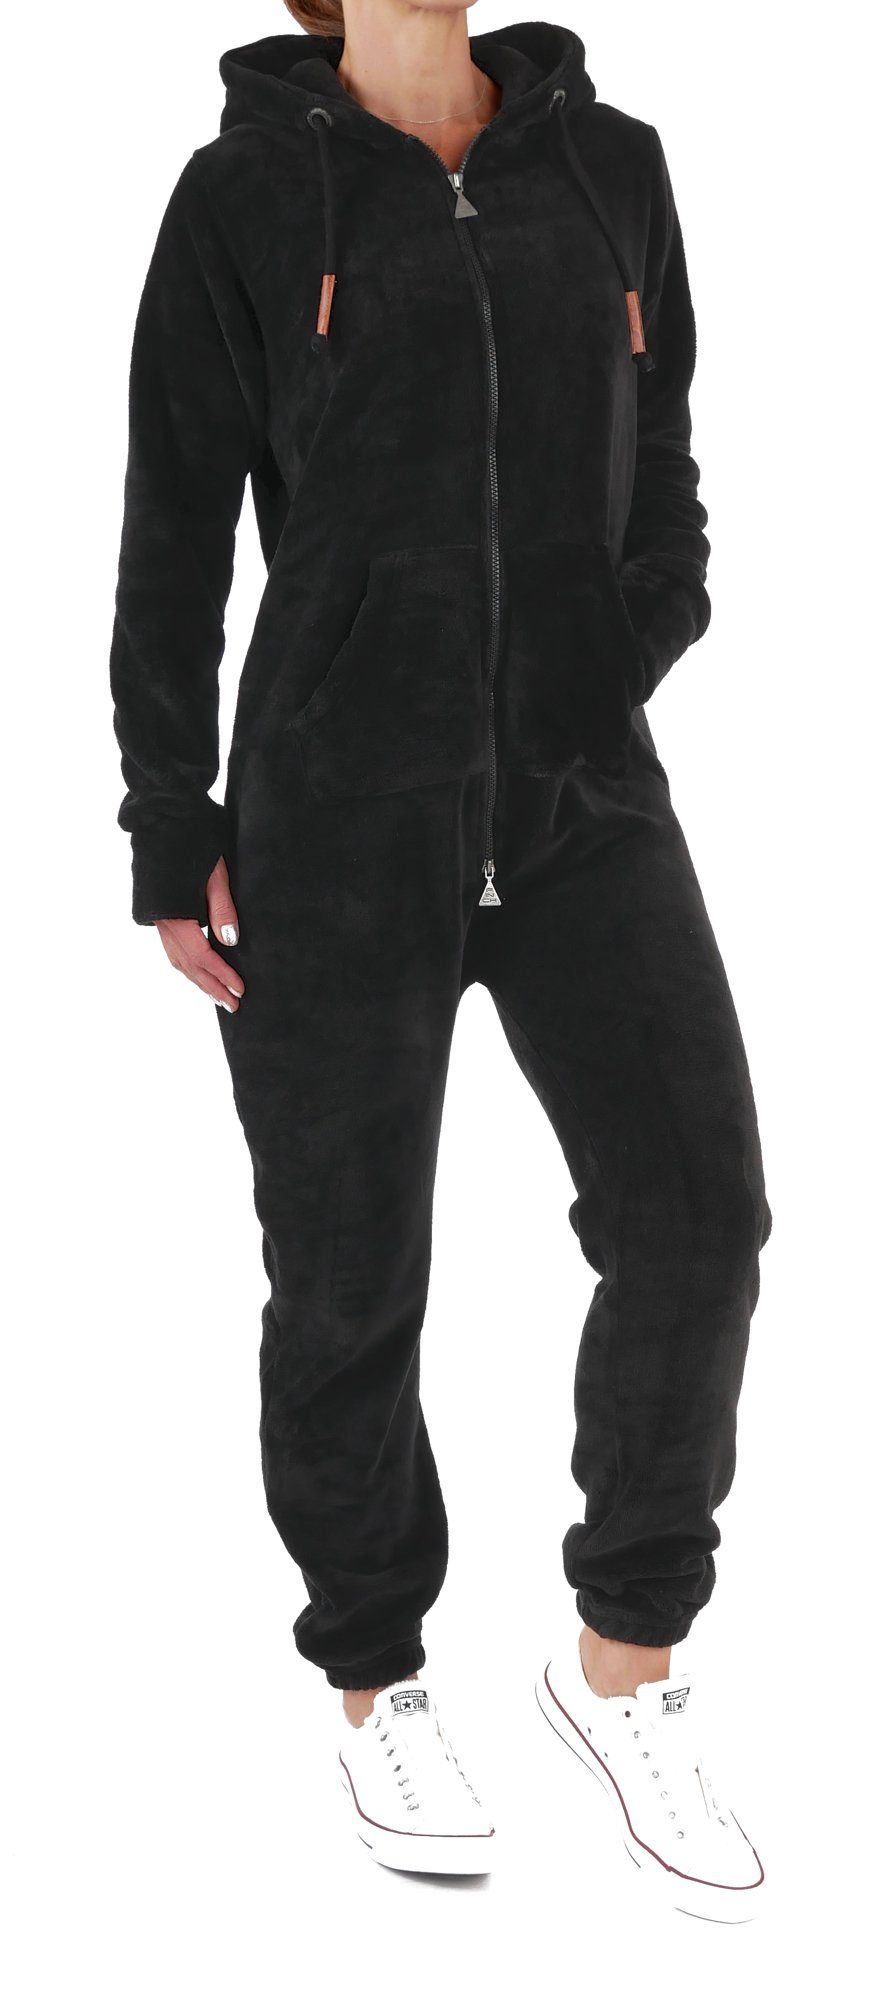 Einteiler Jumpsuit Overall Schwarz Fleece Finchgirl Jumpsuit Flauschig Damen Anzug Teddy